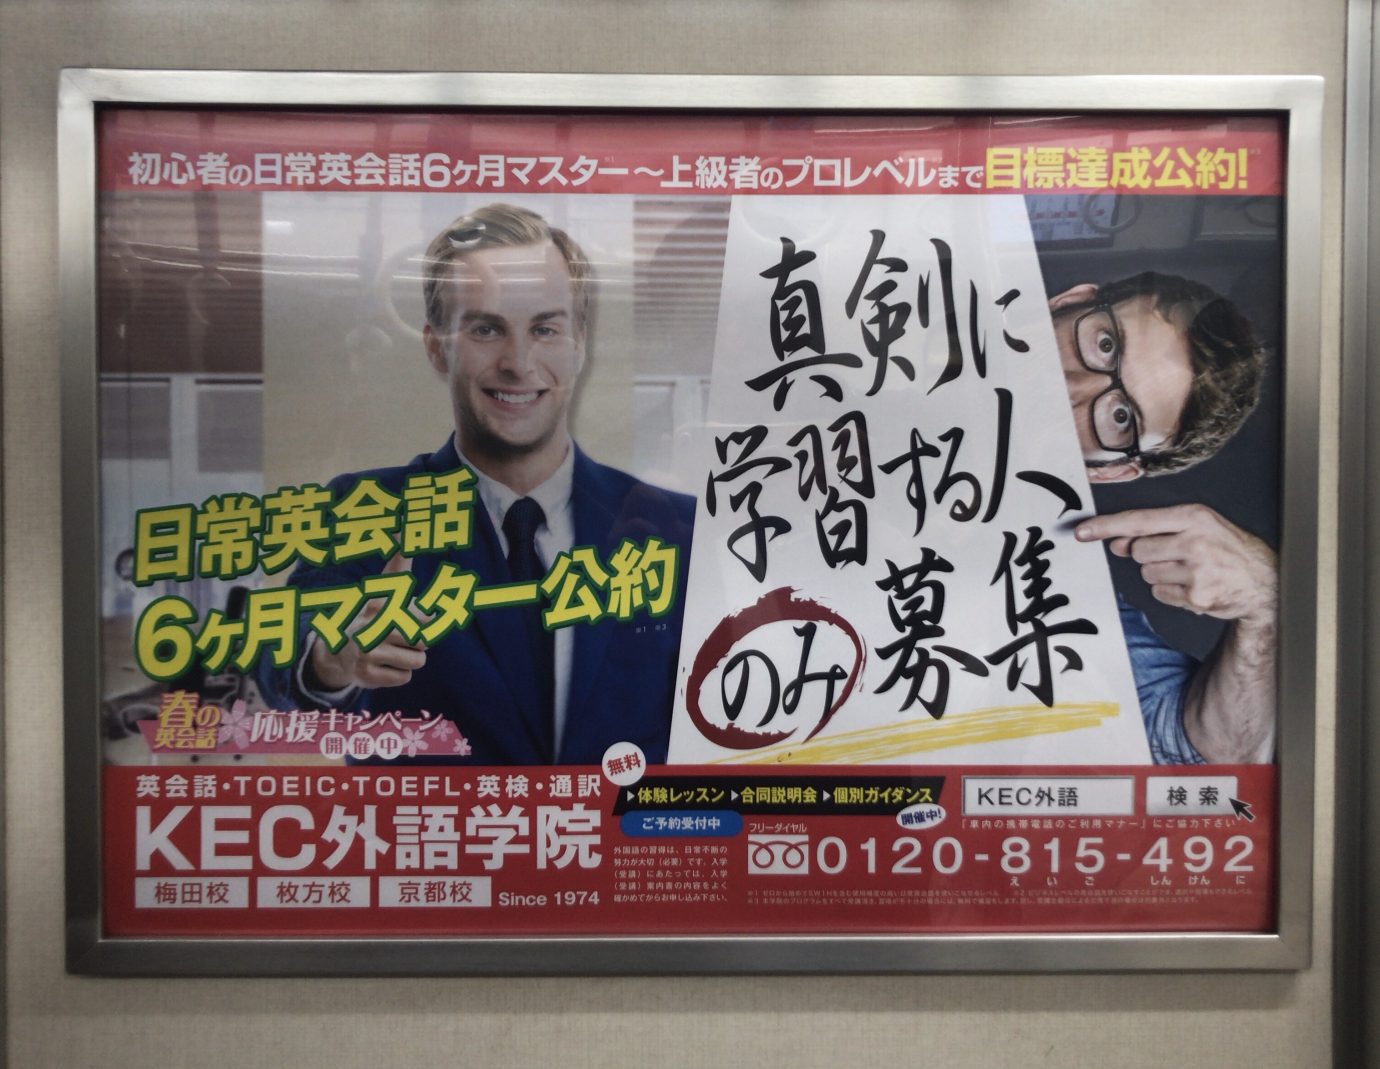 KEC外語学院 大阪市営地下鉄 車内広告